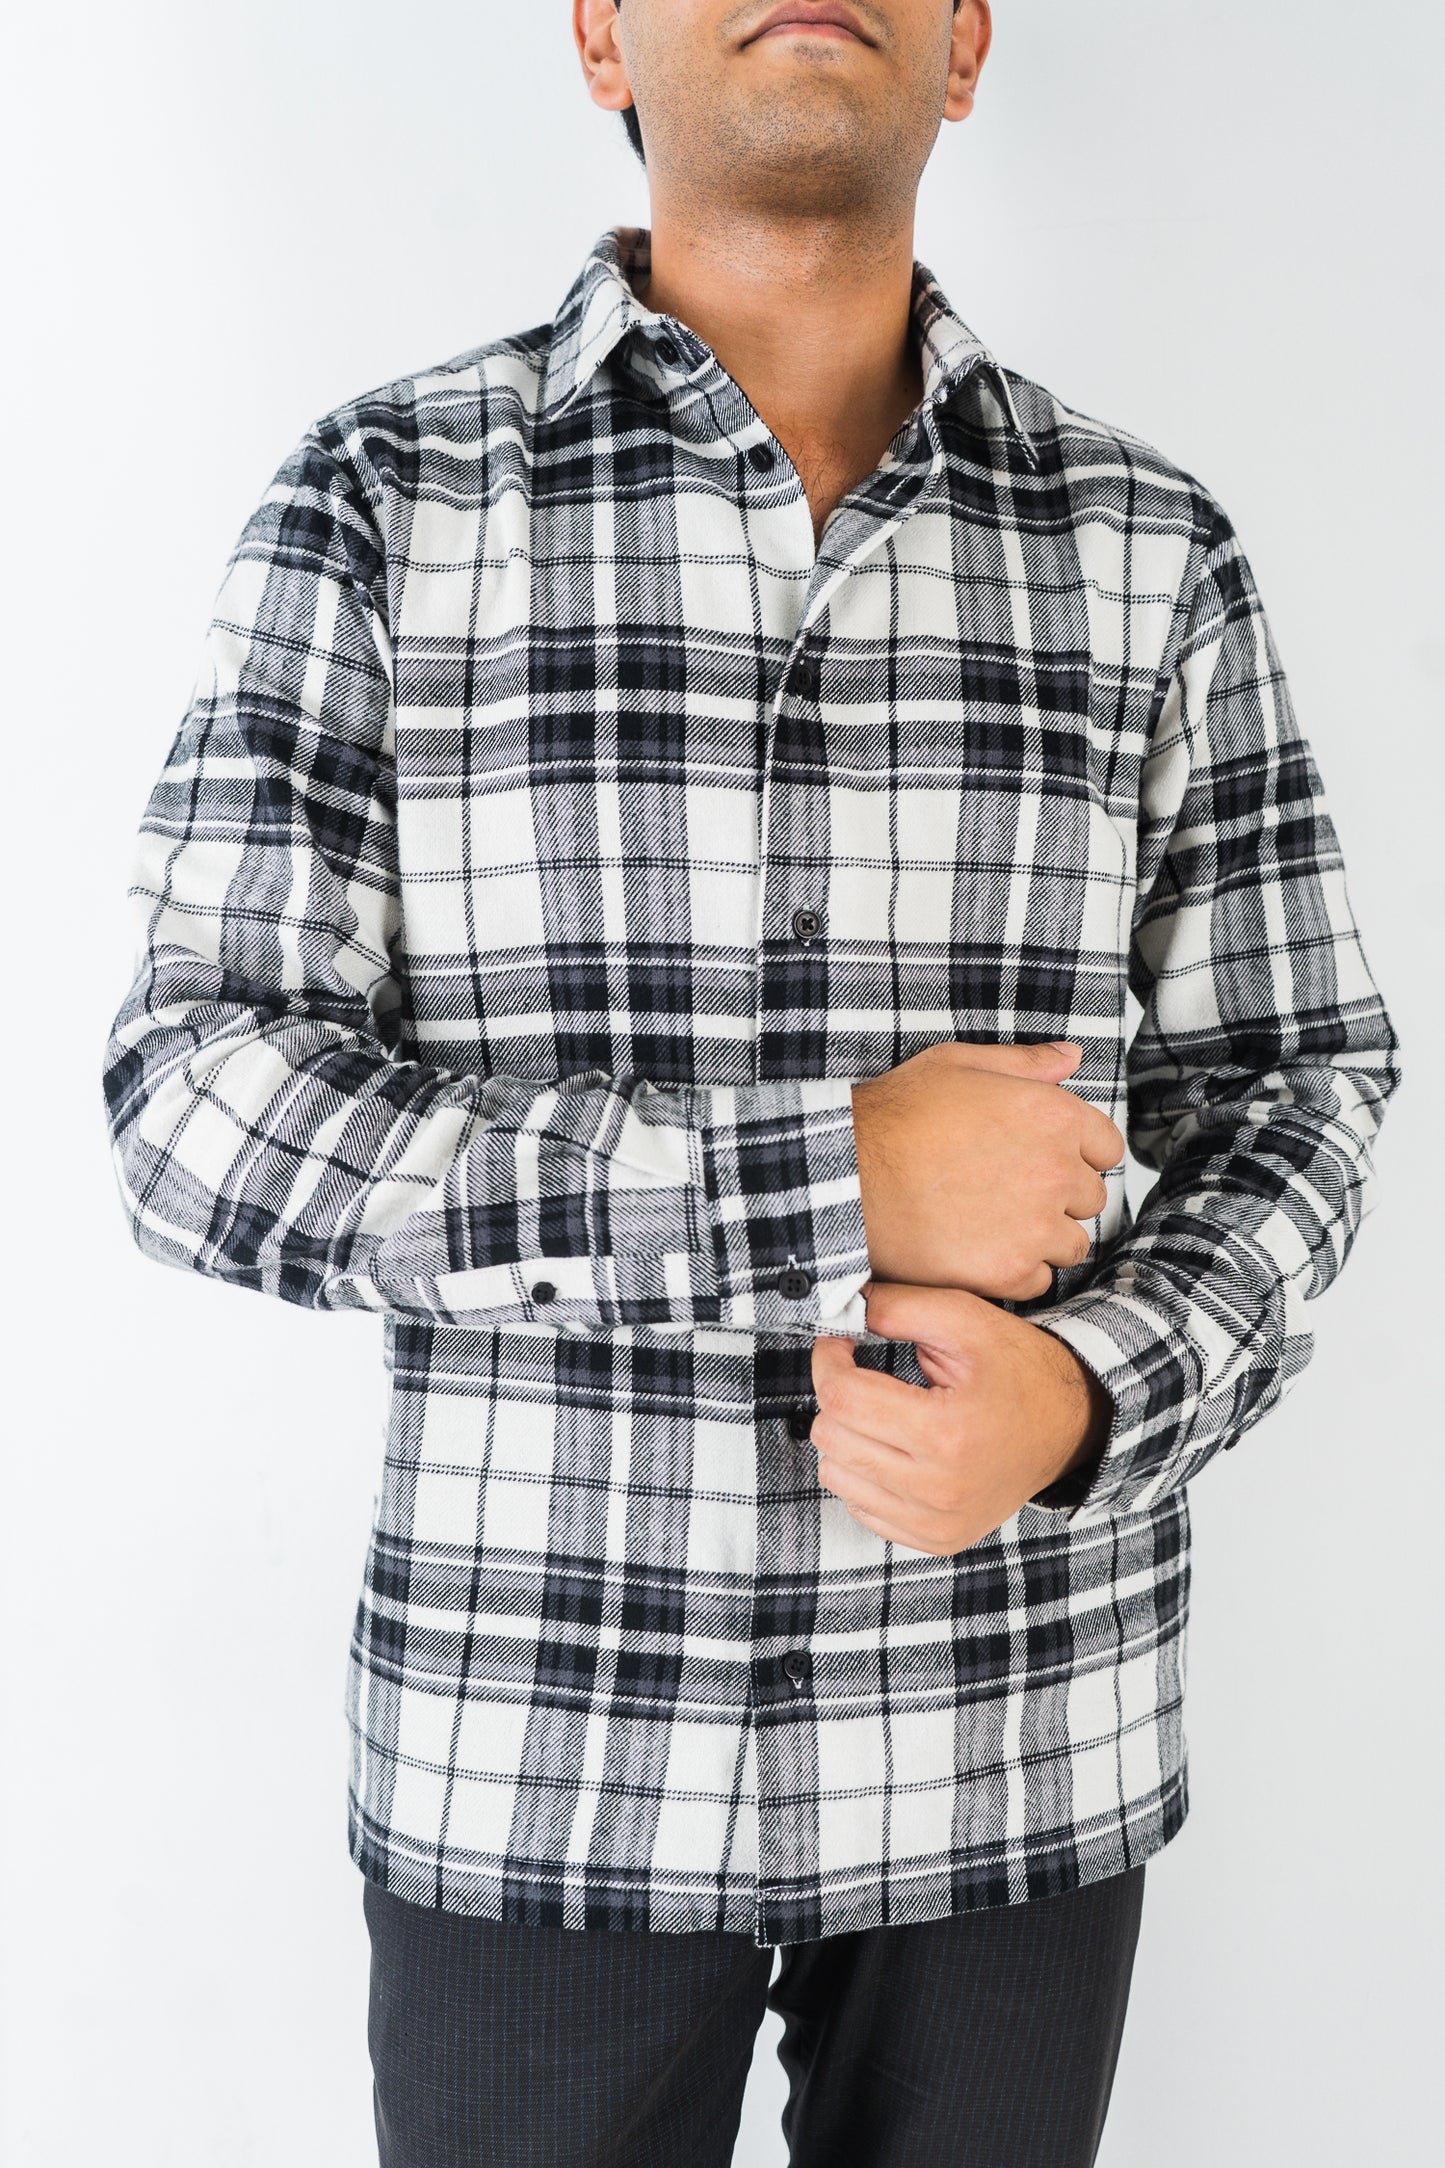 Flannel Shirt for Men - Black & White